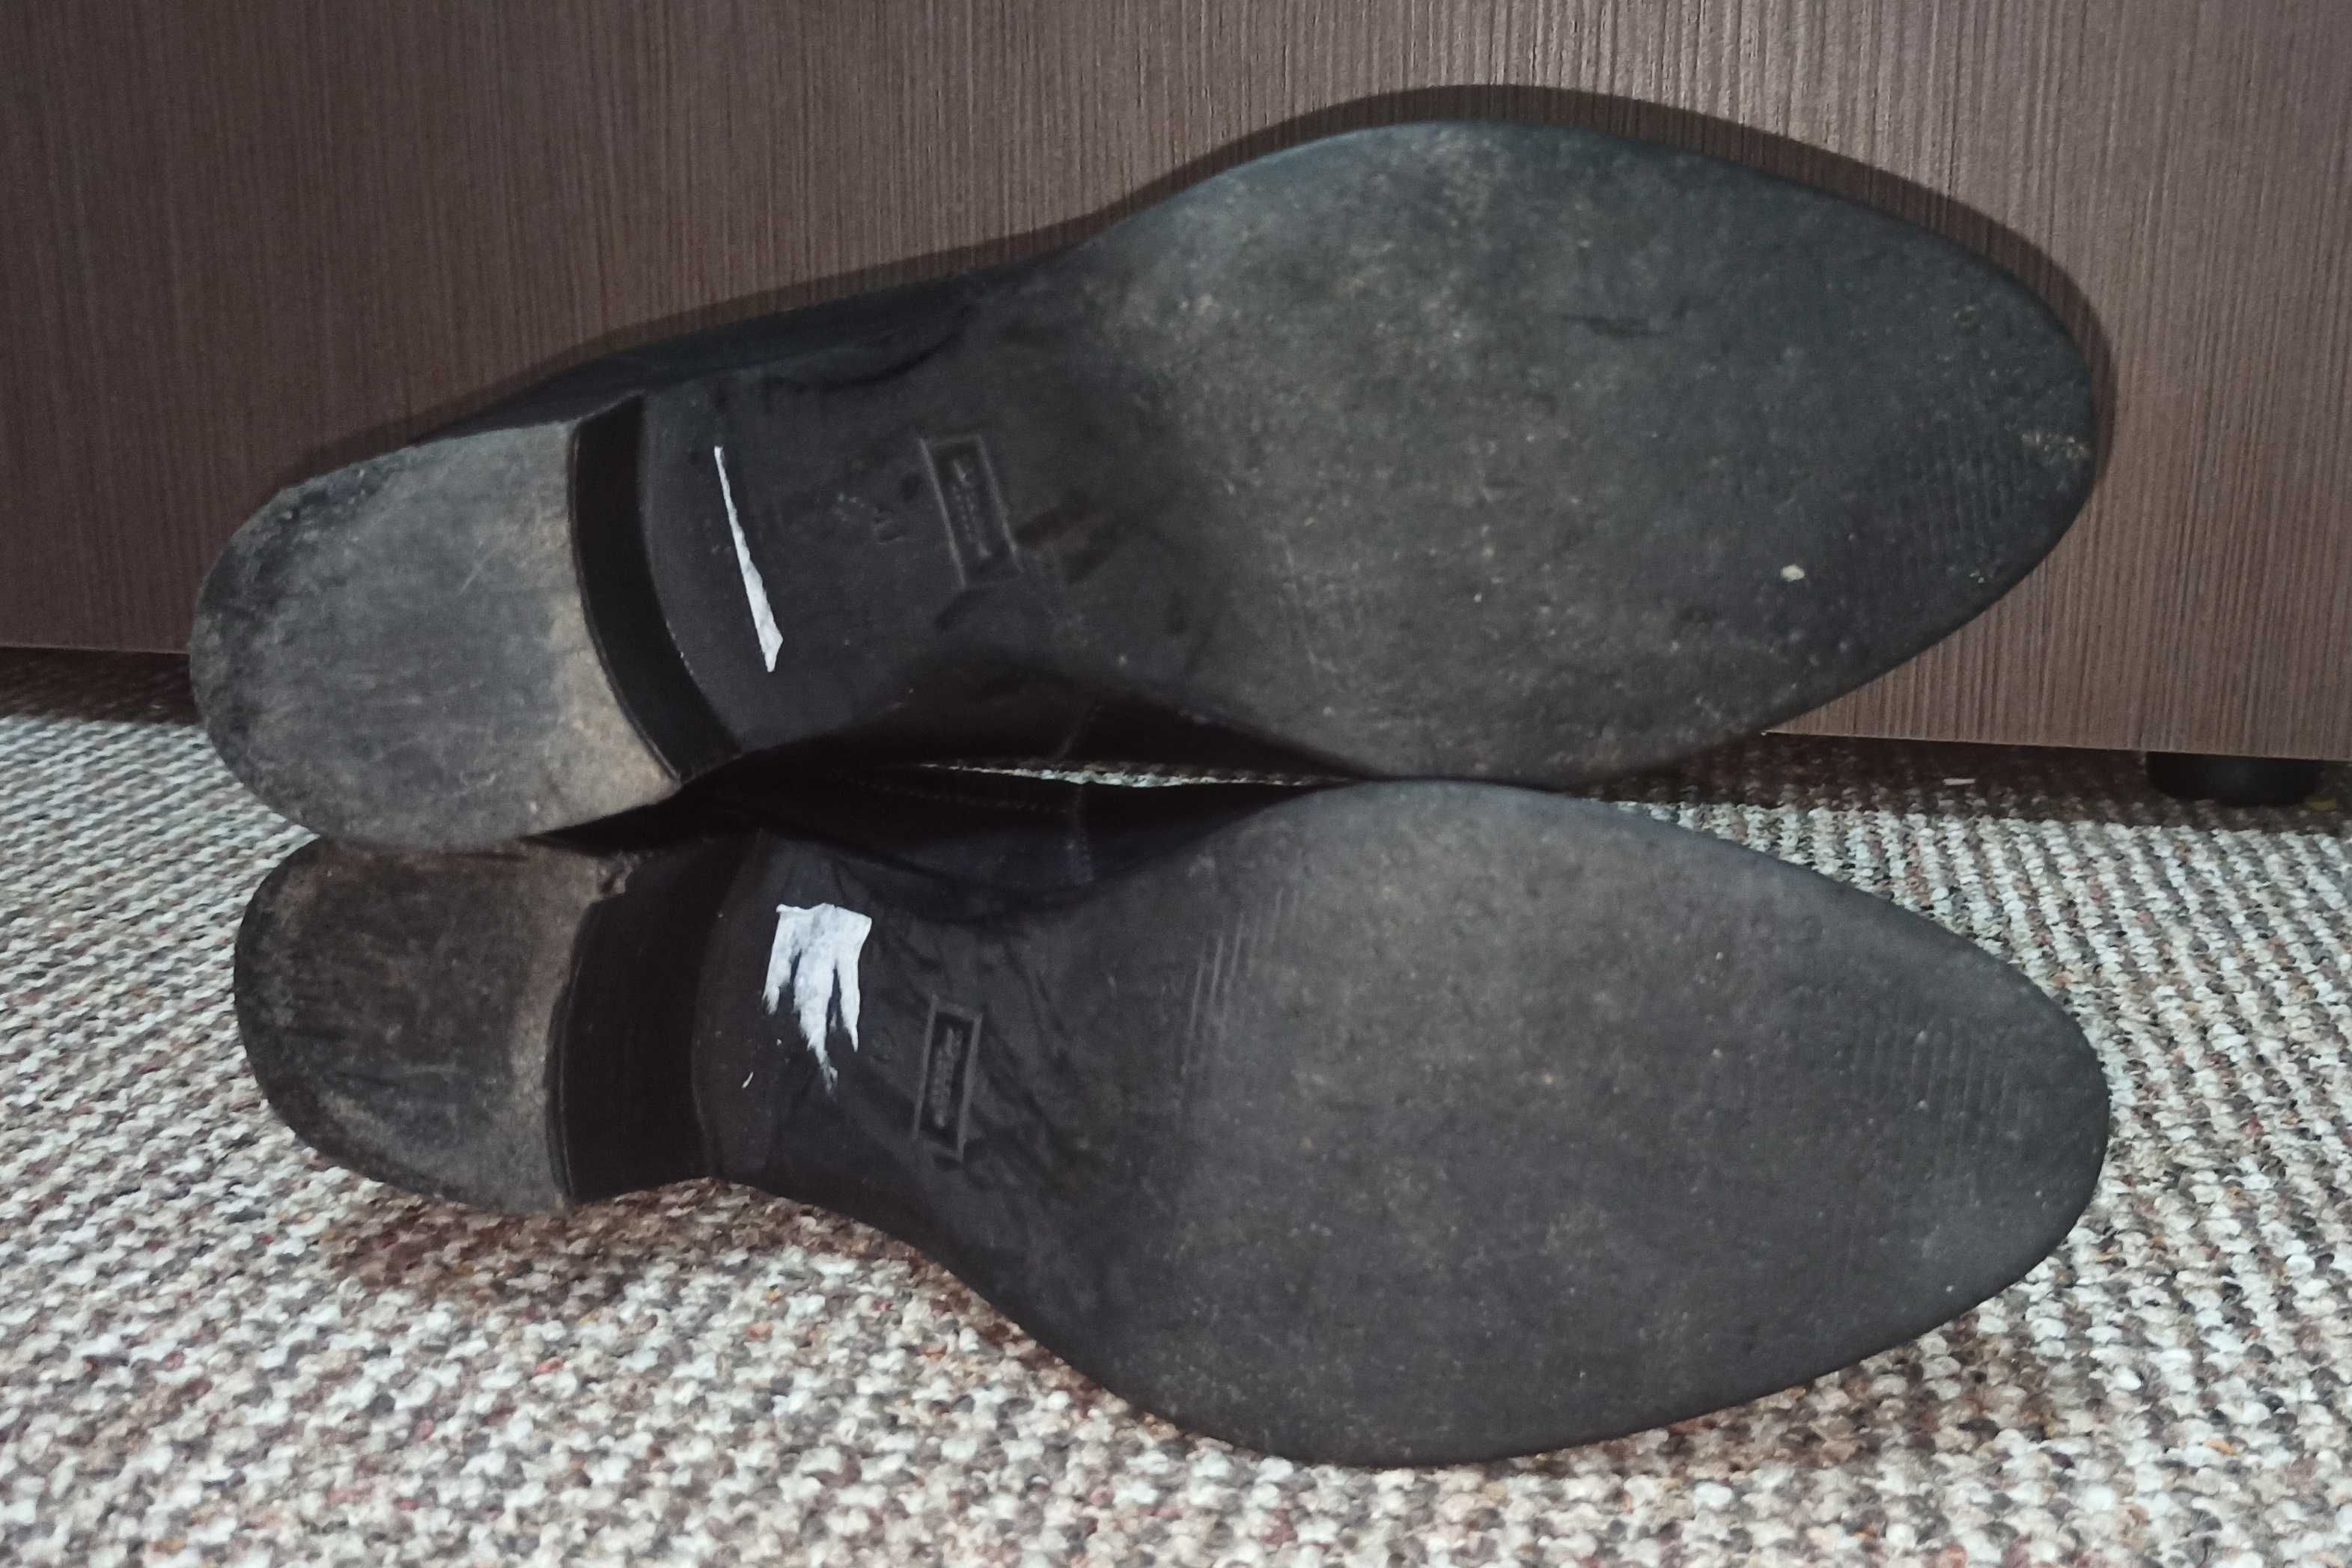 Женские деми ботинки челси duna, натуральная кожа. размер 41